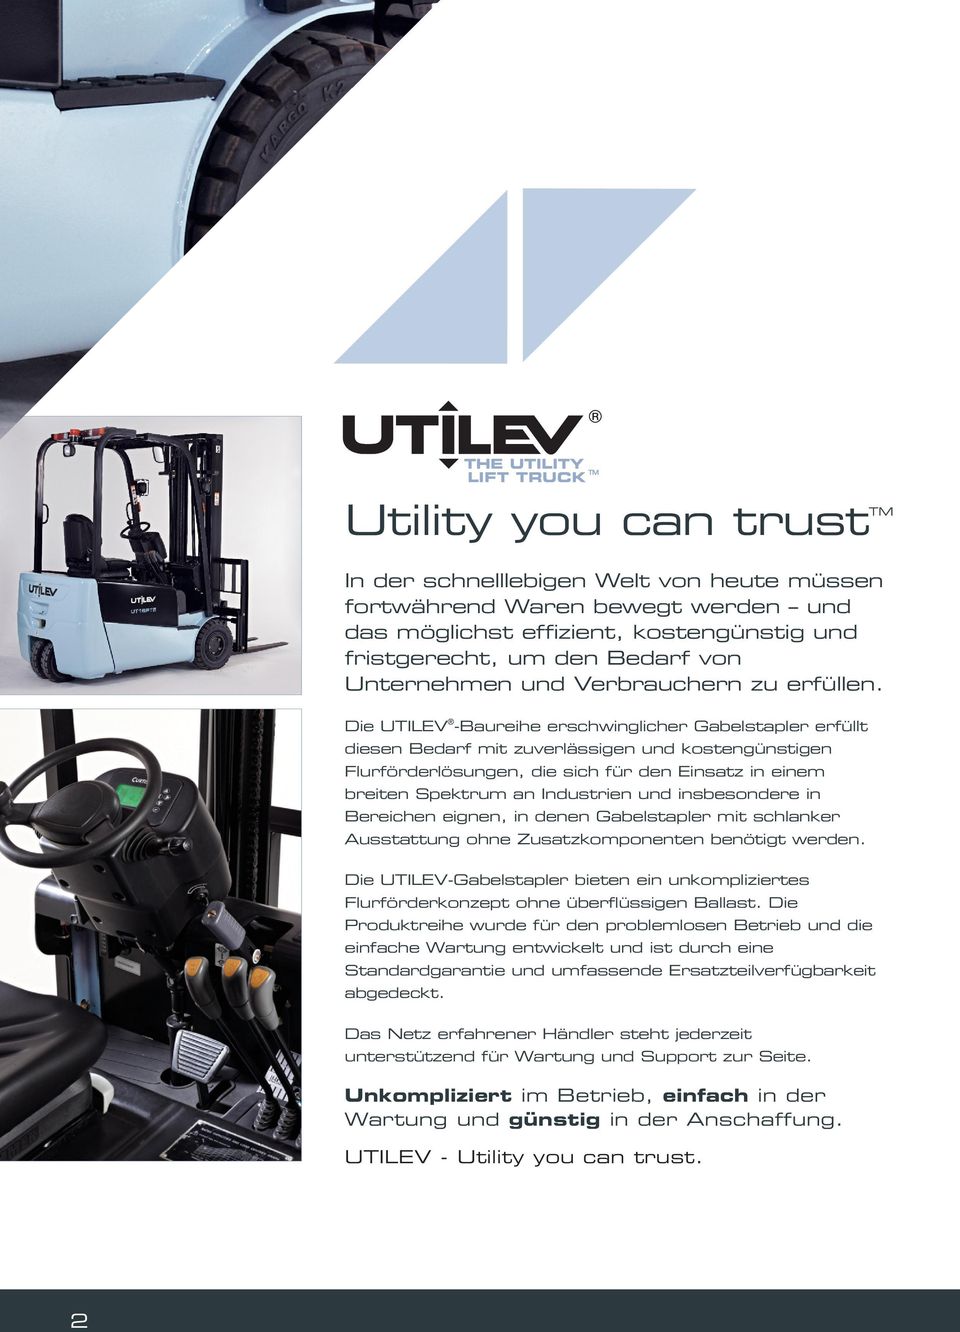 Die UTILEV -Baureihe erschwinglicher Gabelstapler erfüllt diesen Bedarf mit zuverlässigen und kostengünstigen Flurförderlösungen, die sich für den Einsatz in einem breiten Spektrum an Industrien und